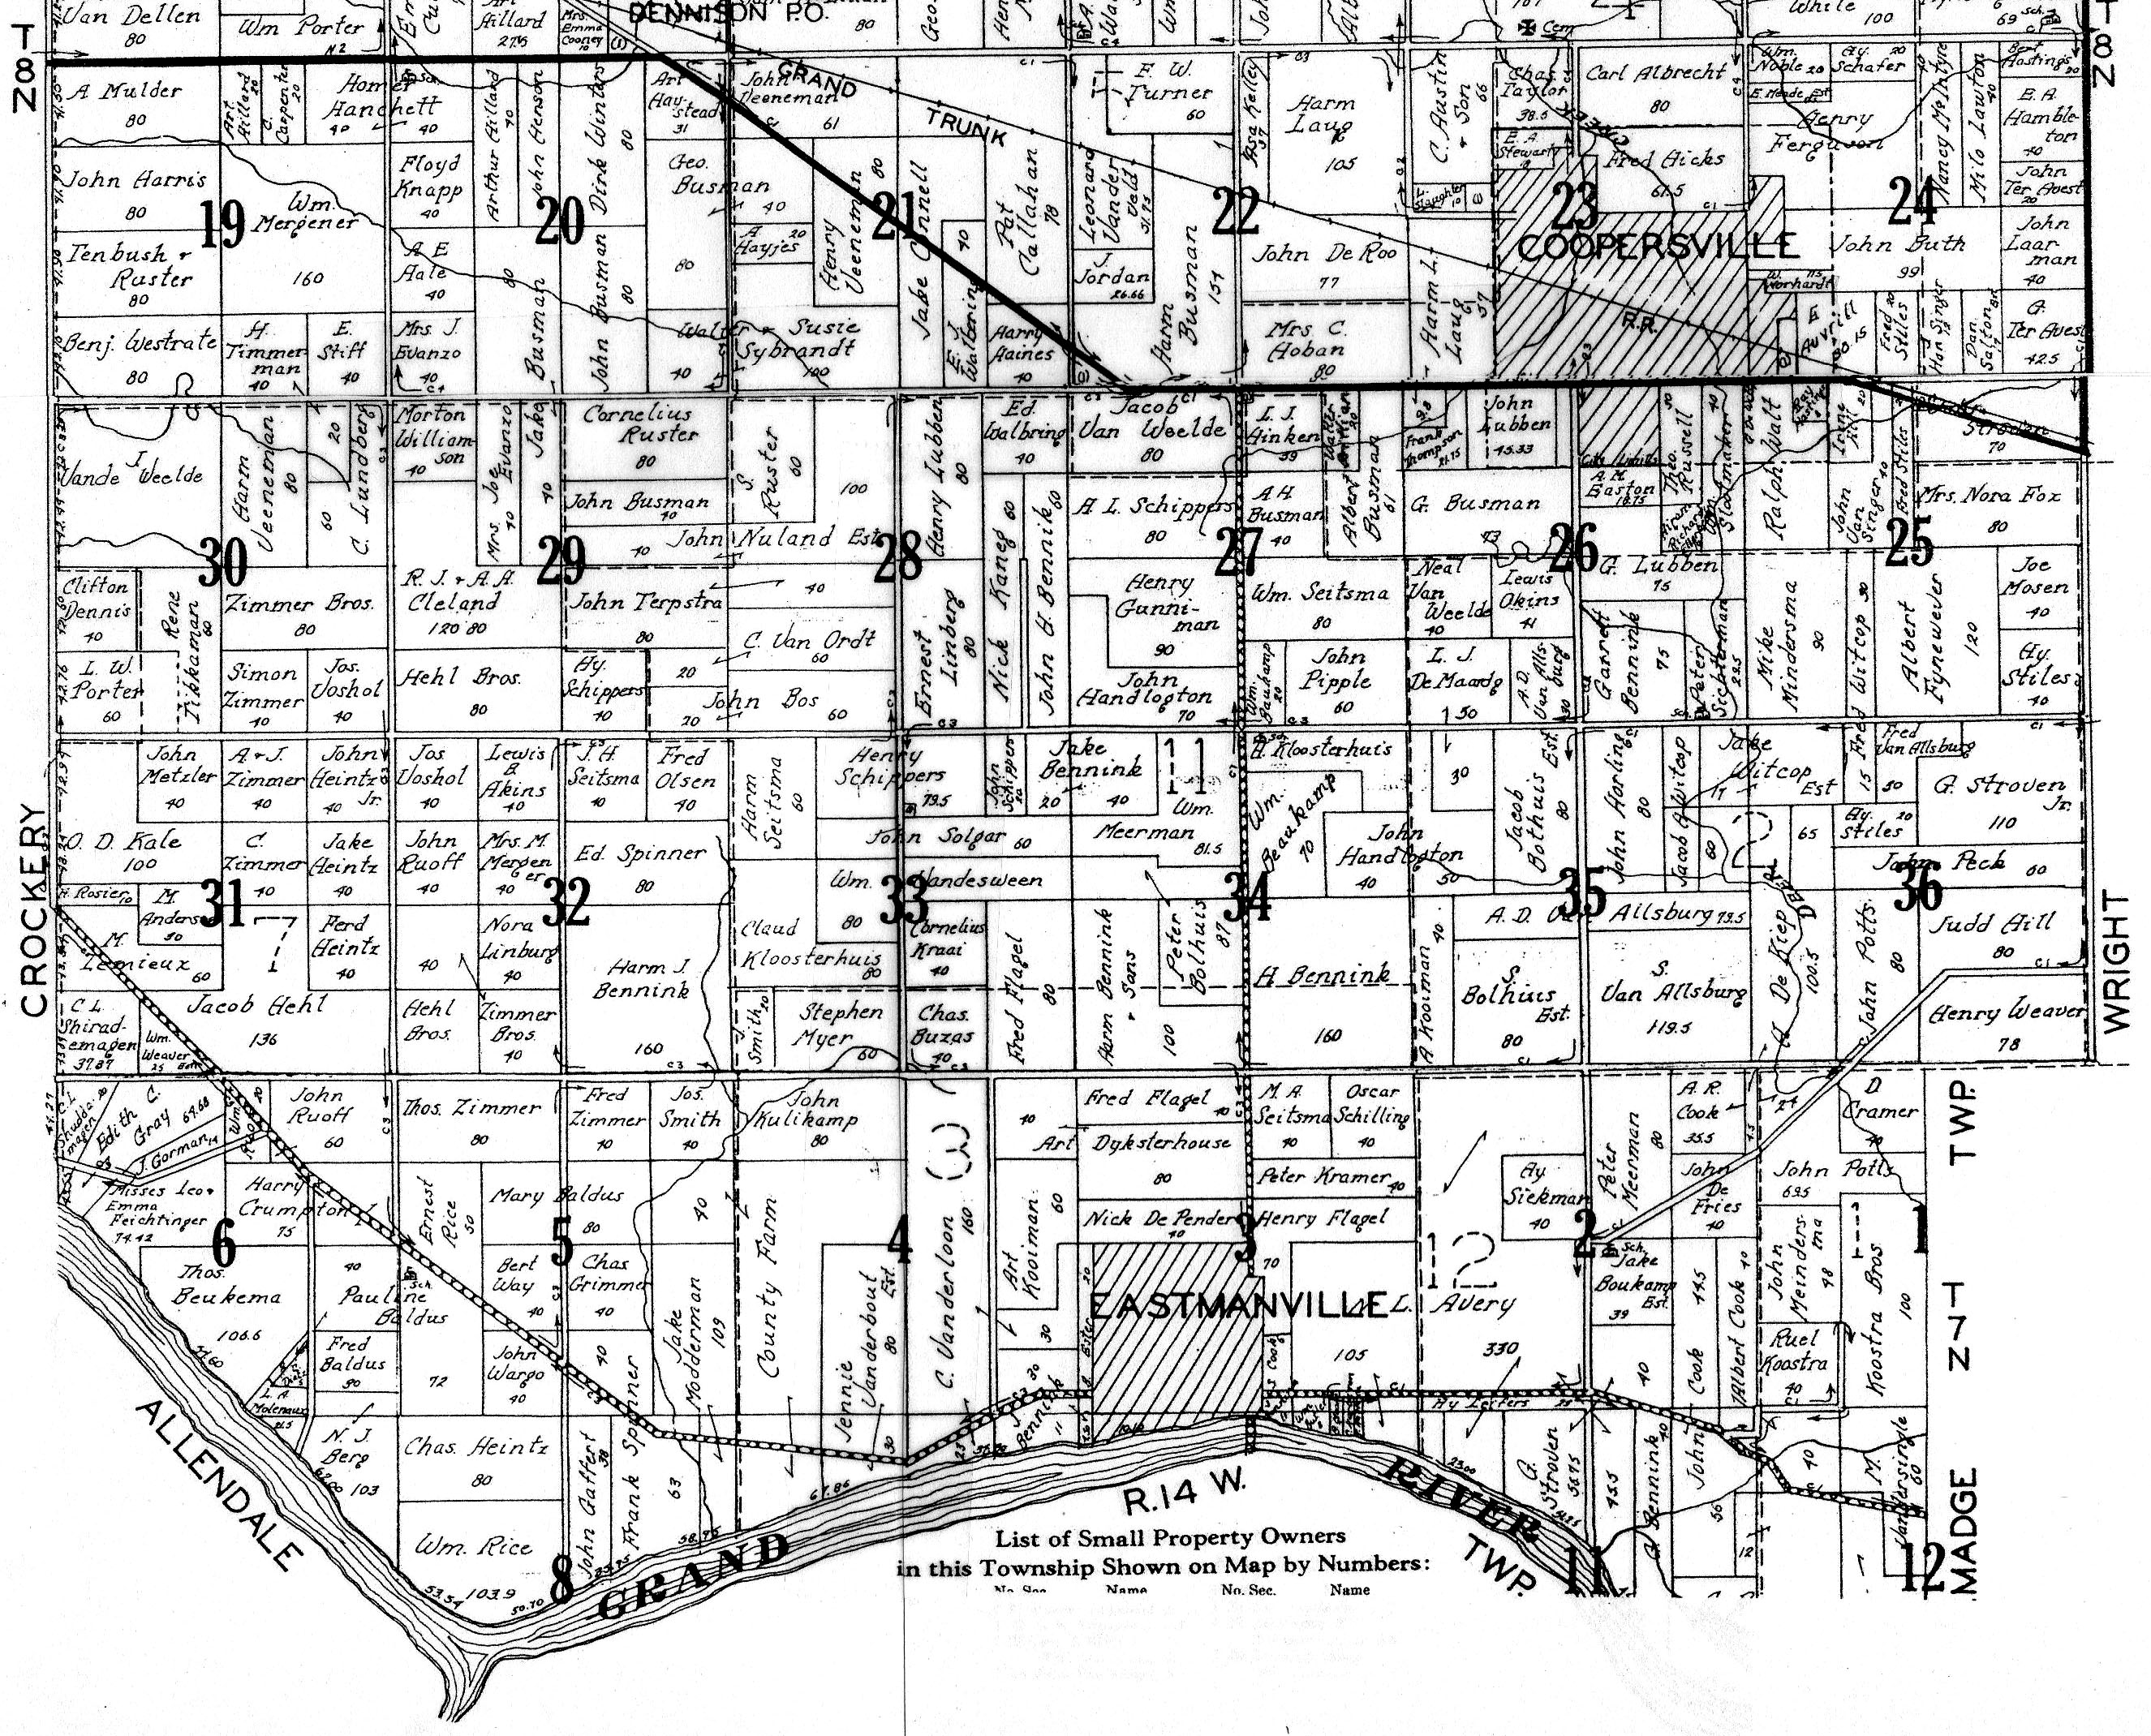 1930 Polkton Township Maps